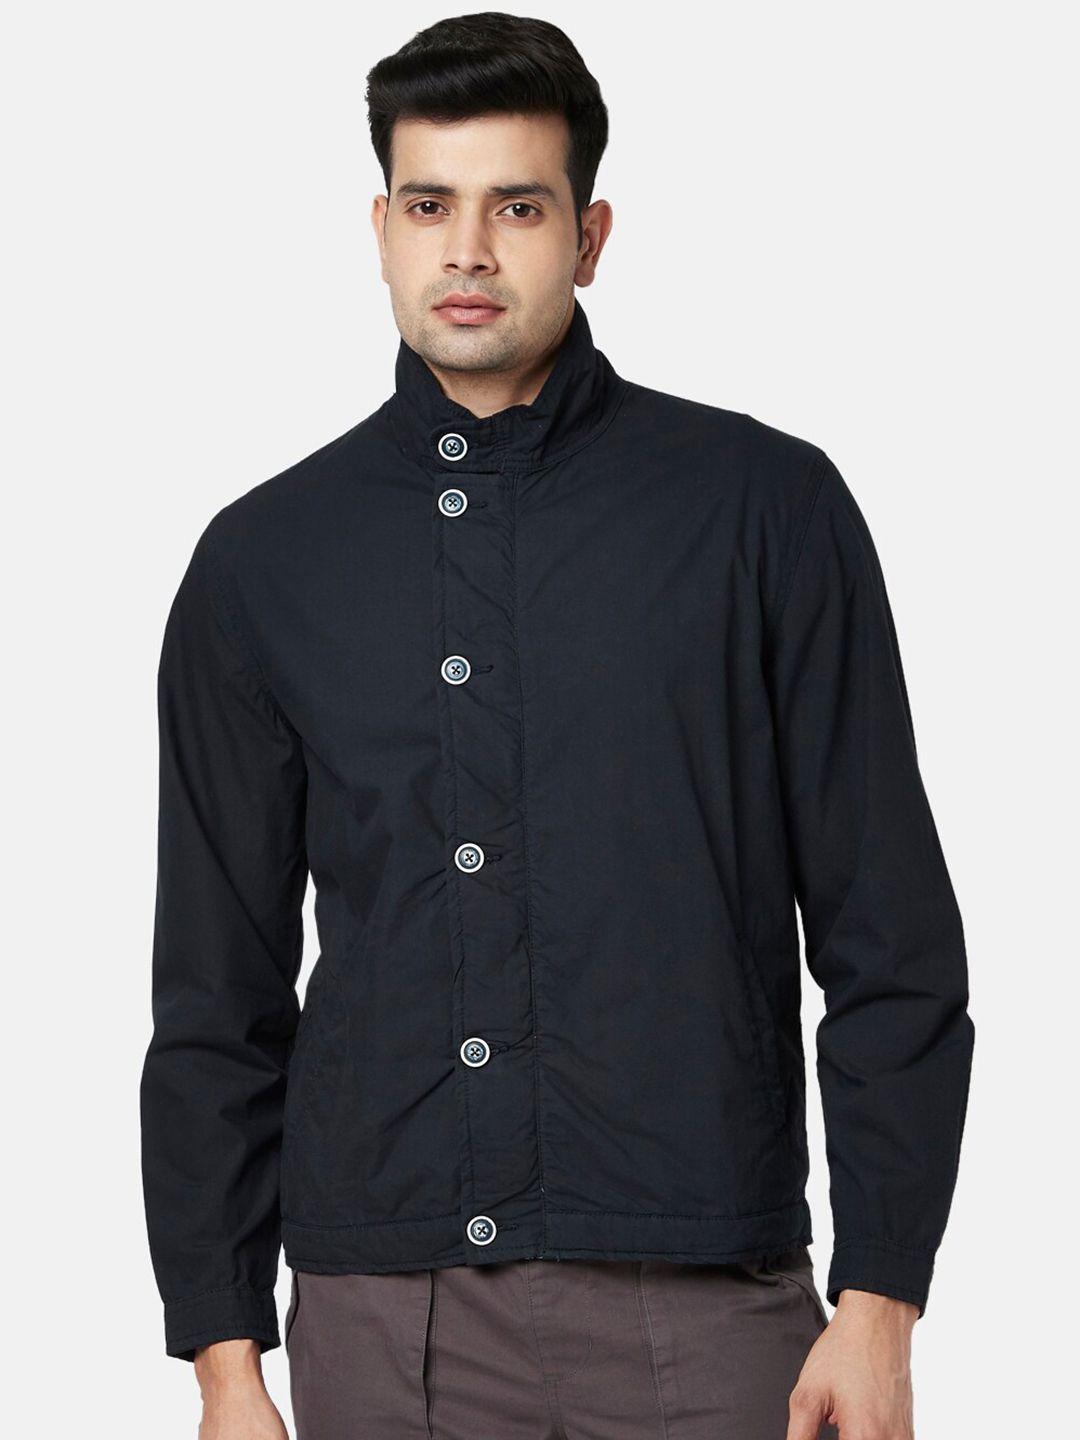 urban-ranger-by-pantaloons-men-navy-blue-cotton-tailored-jacket